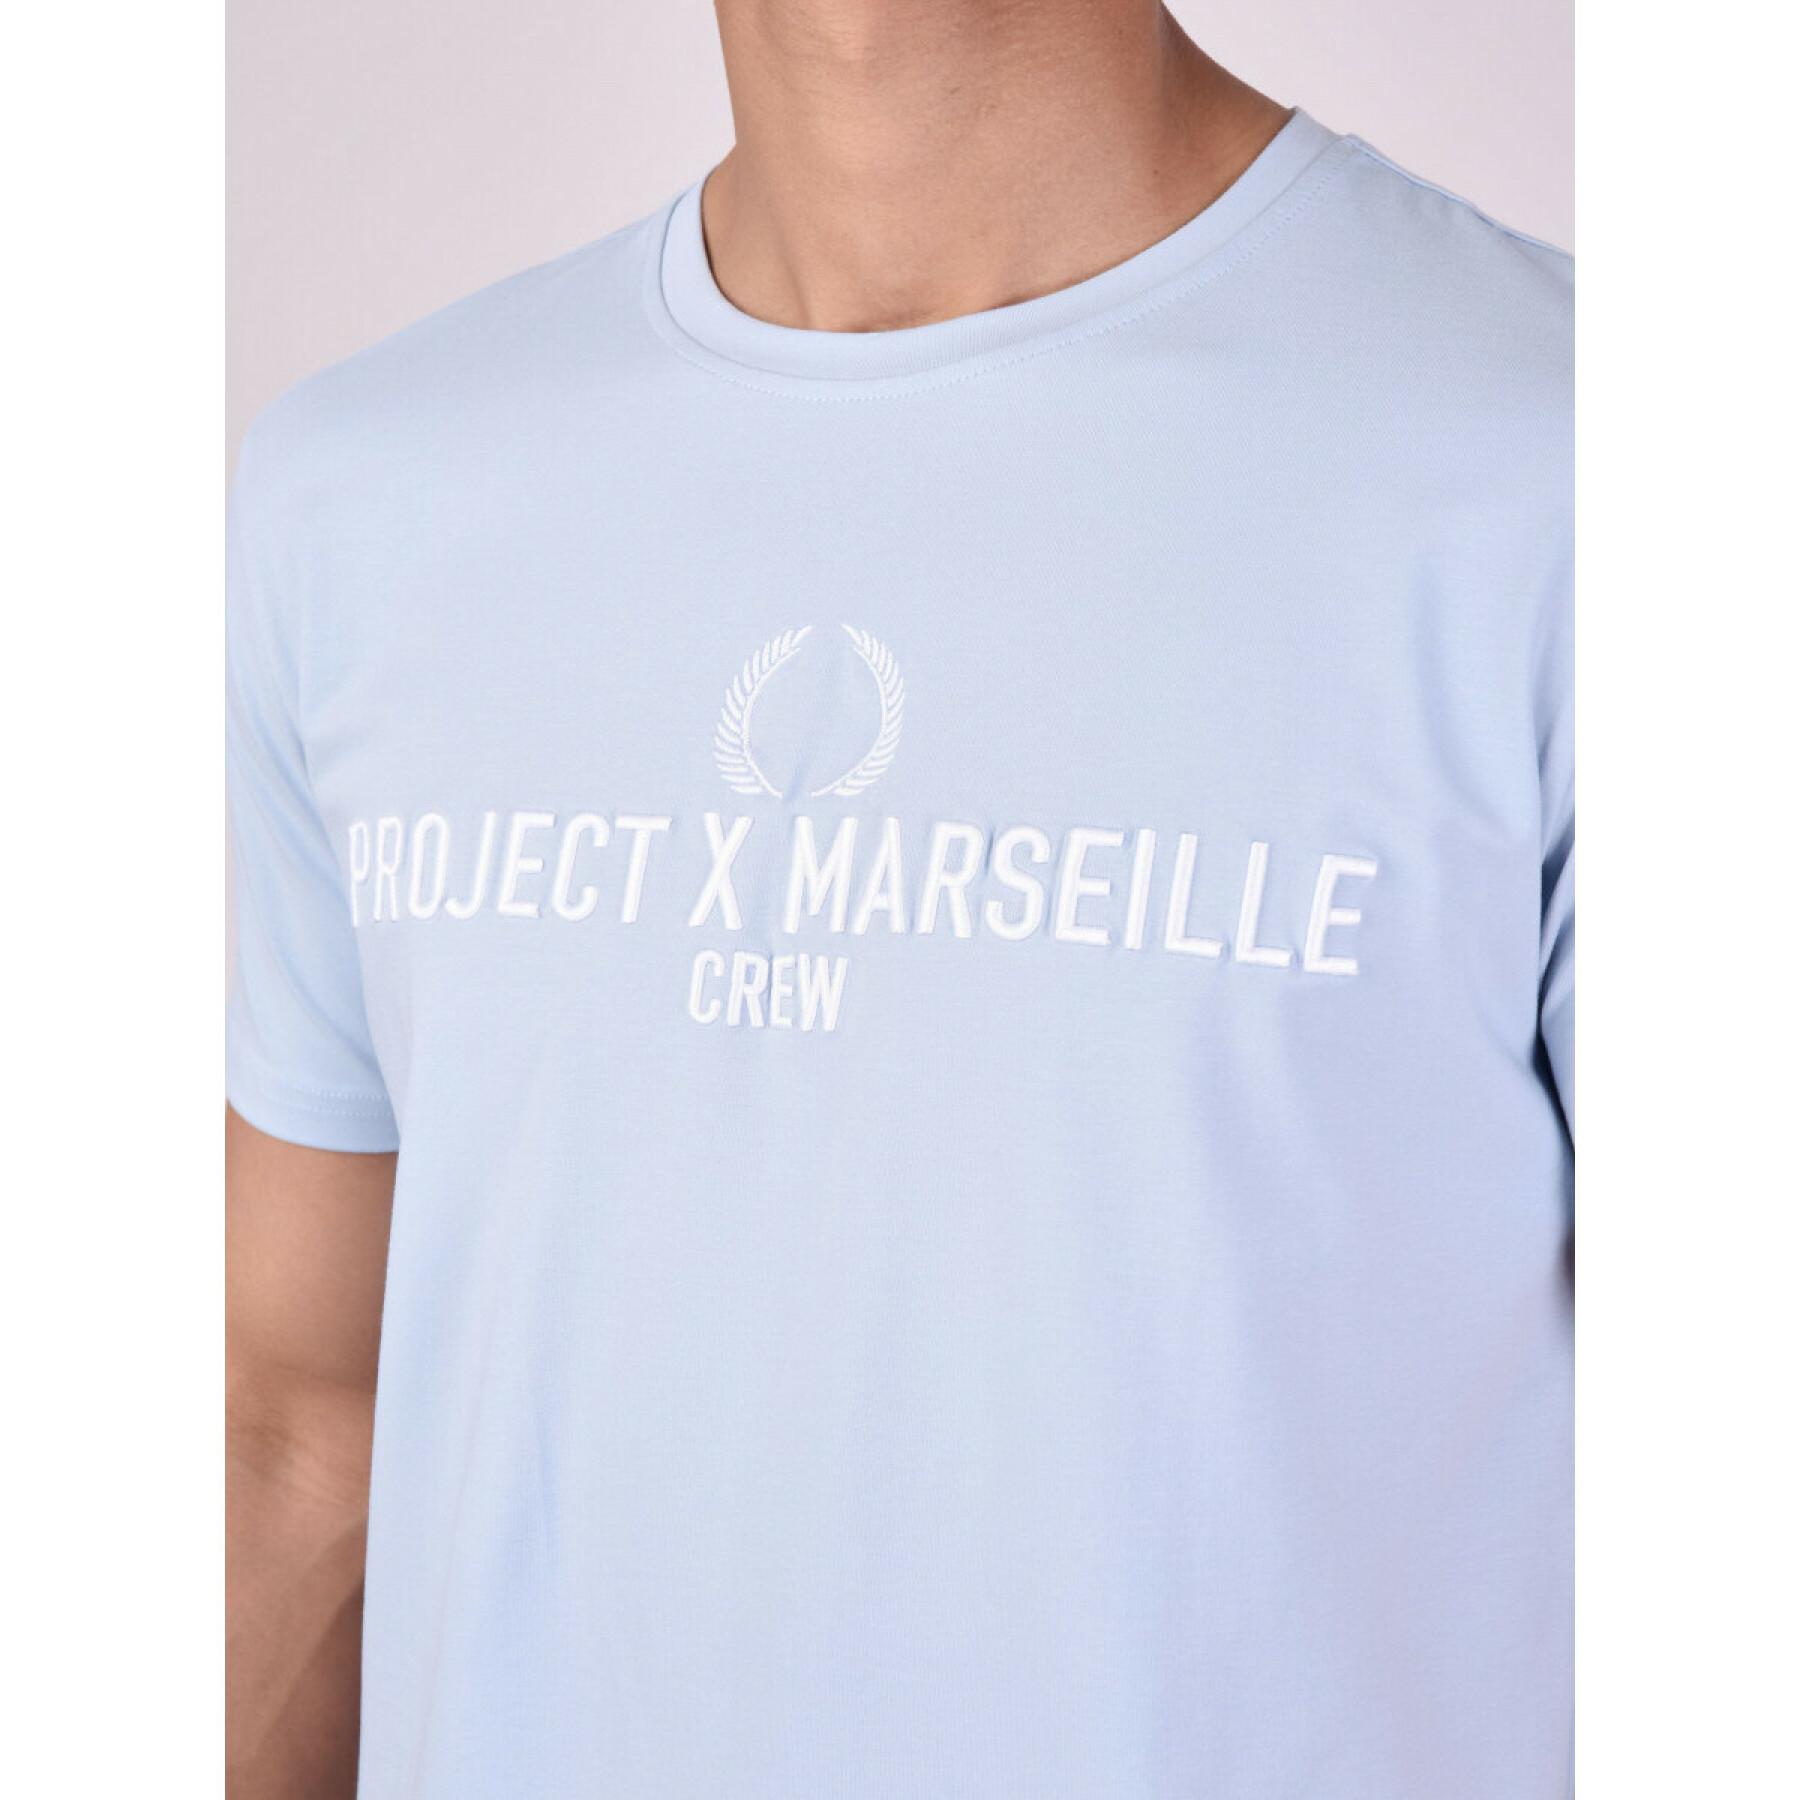 Logo T-shirt Project X Paris marseille crew